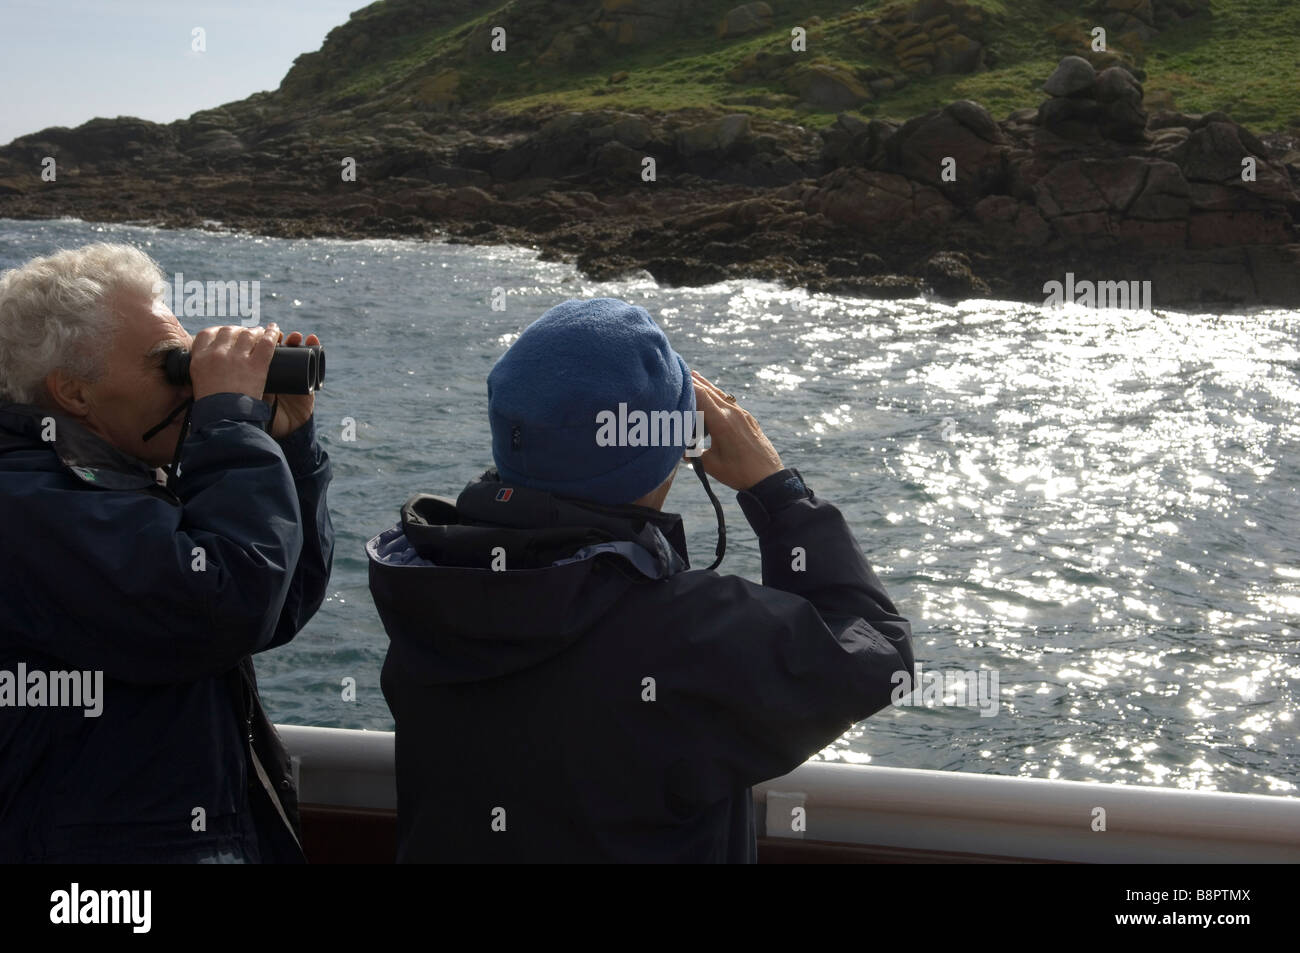 Un giovane con un binocolo visualizza le guarnizioni e la fauna sulle isole orientali a bordo di una barca. Isole Scilly. La Cornovaglia. SW Inghilterra Foto Stock